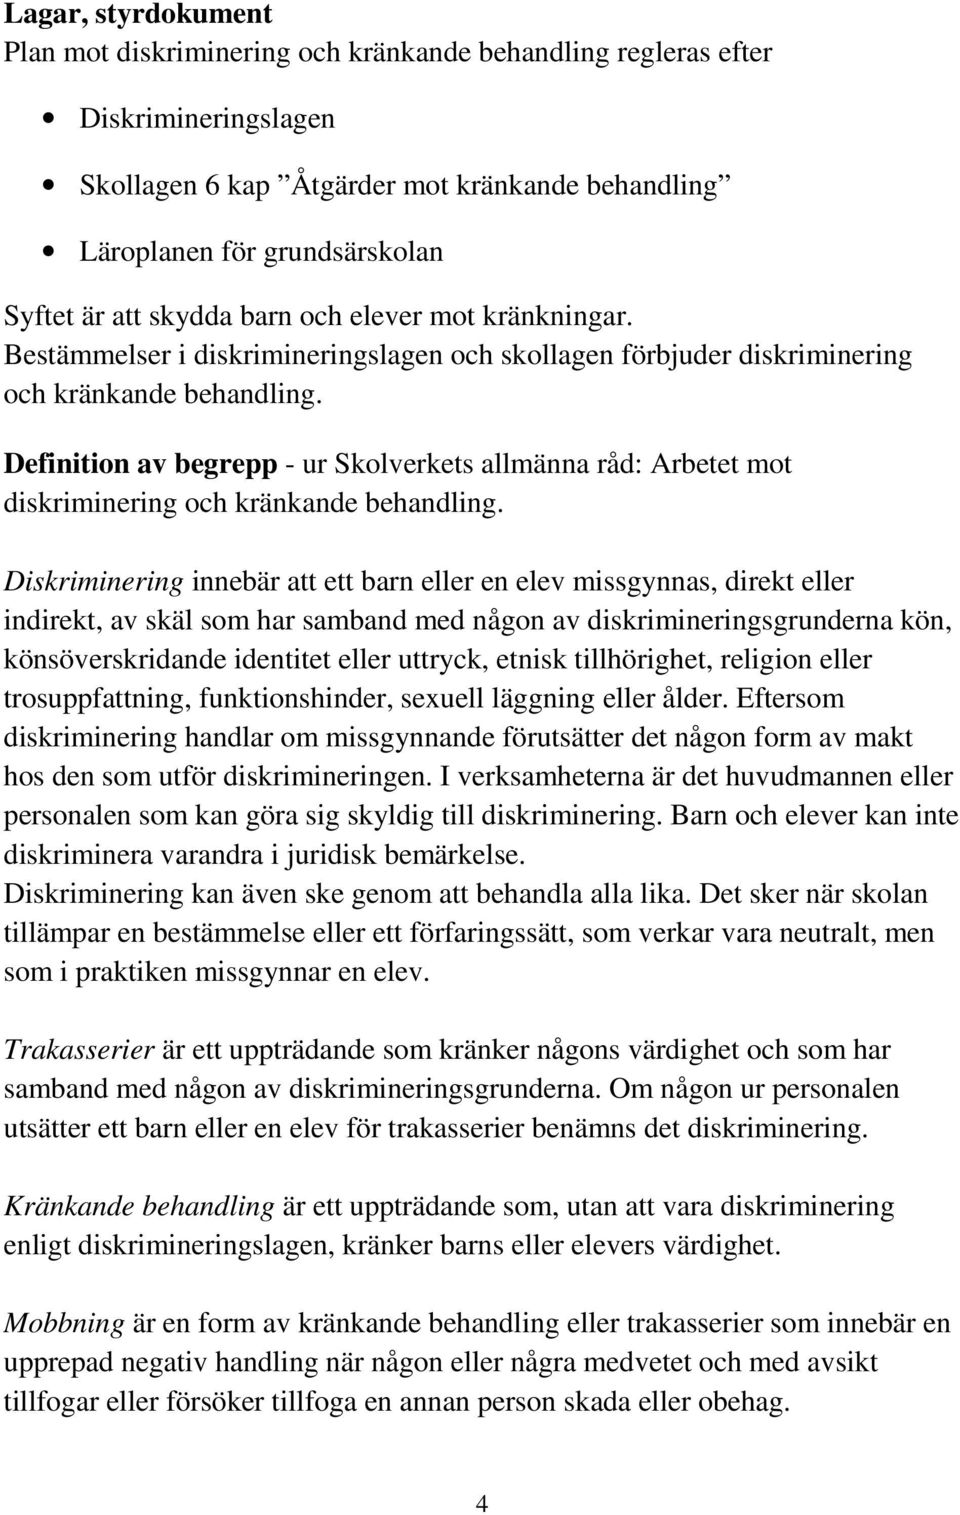 Definition av begrepp - ur Skolverkets allmänna råd: Arbetet mot diskriminering och kränkande behandling.